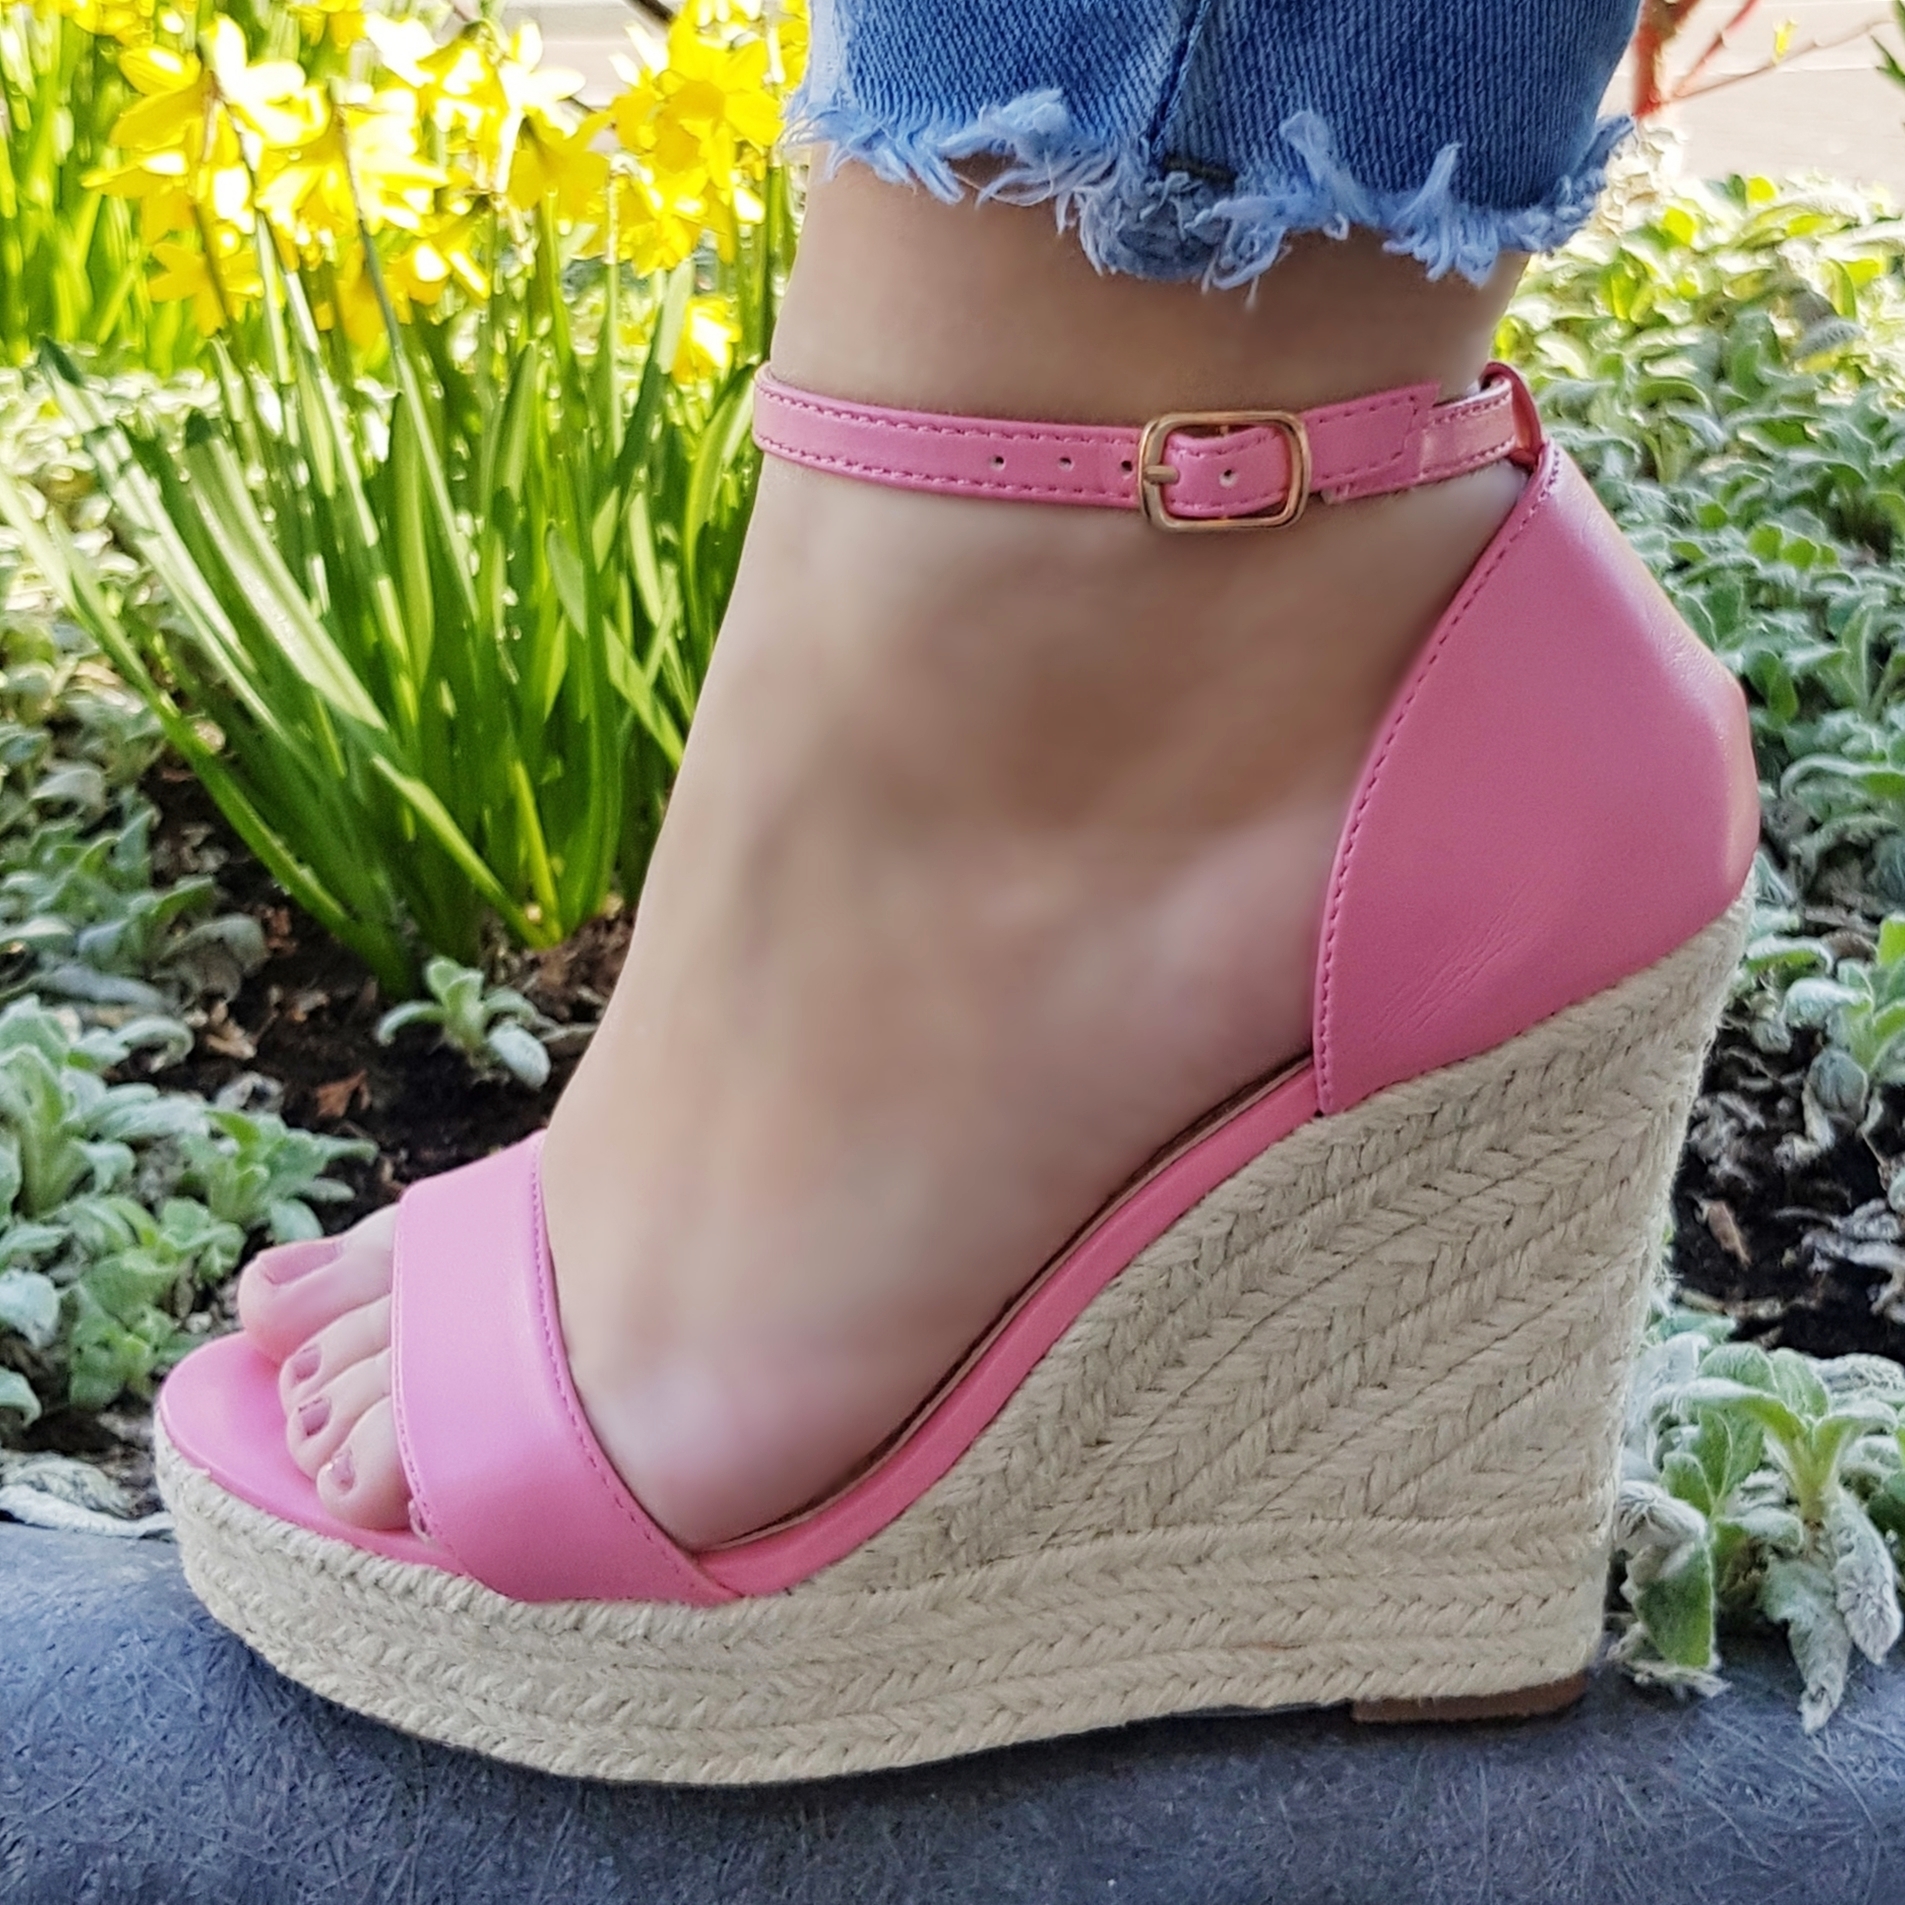 Rose sleehakken met dichte hiel en enkelbandje | Roze sleehak sandalen